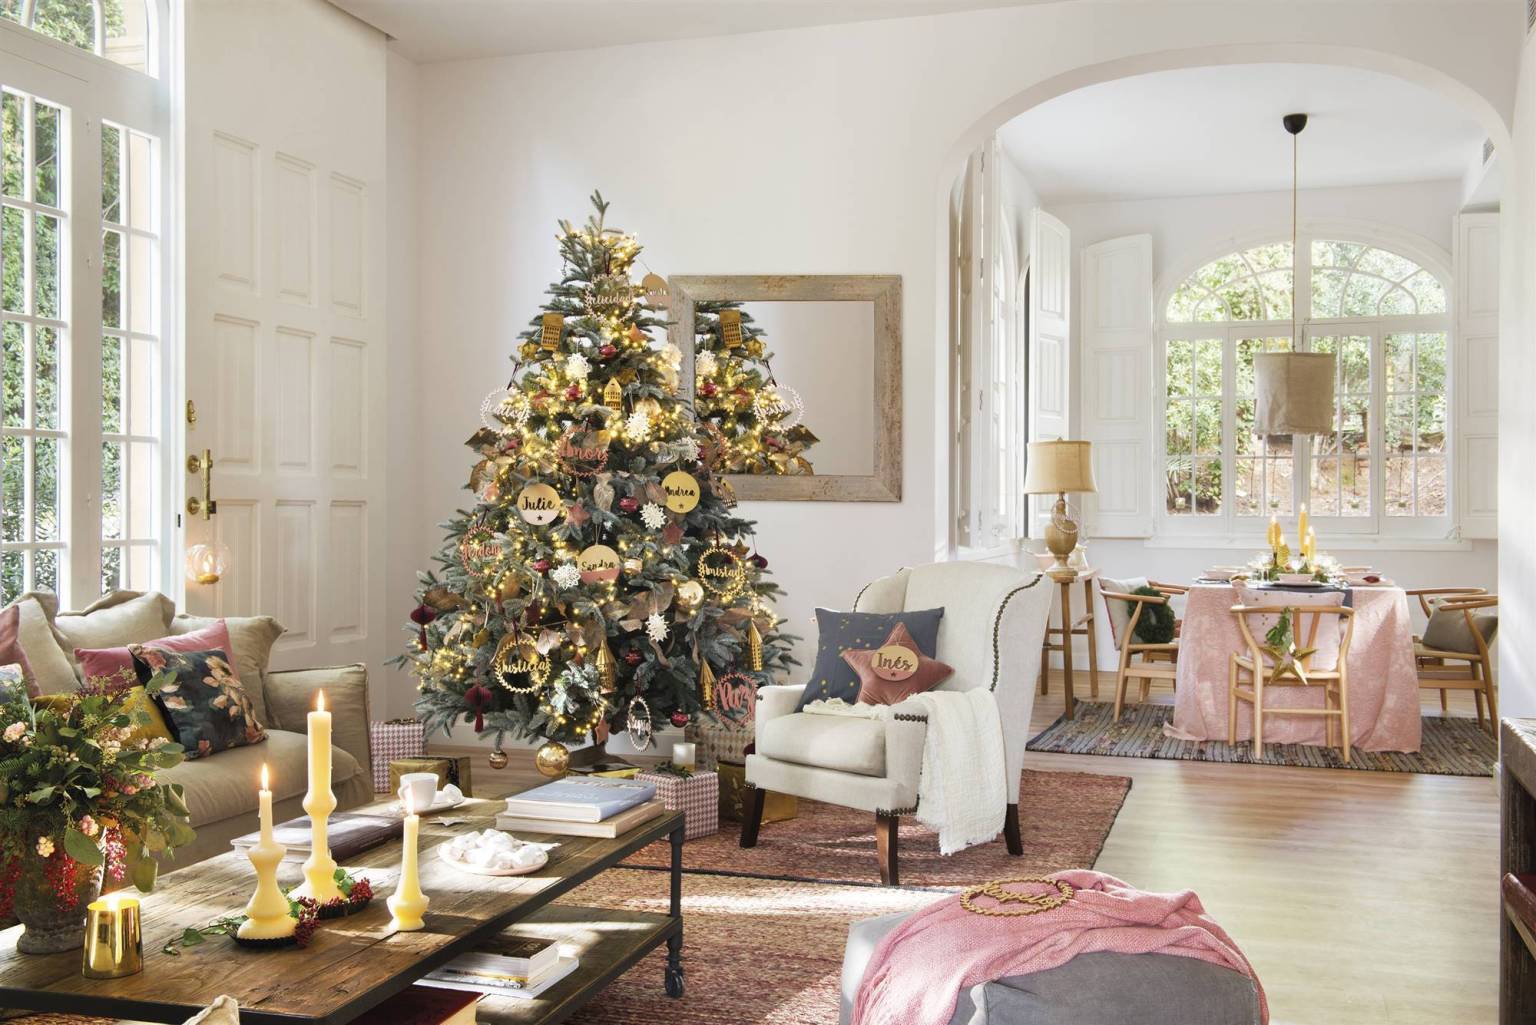 Căn nhà nổi bật với màu mận chín ấm áp, dịu dàng trang trí Giáng sinh - Ảnh 2.